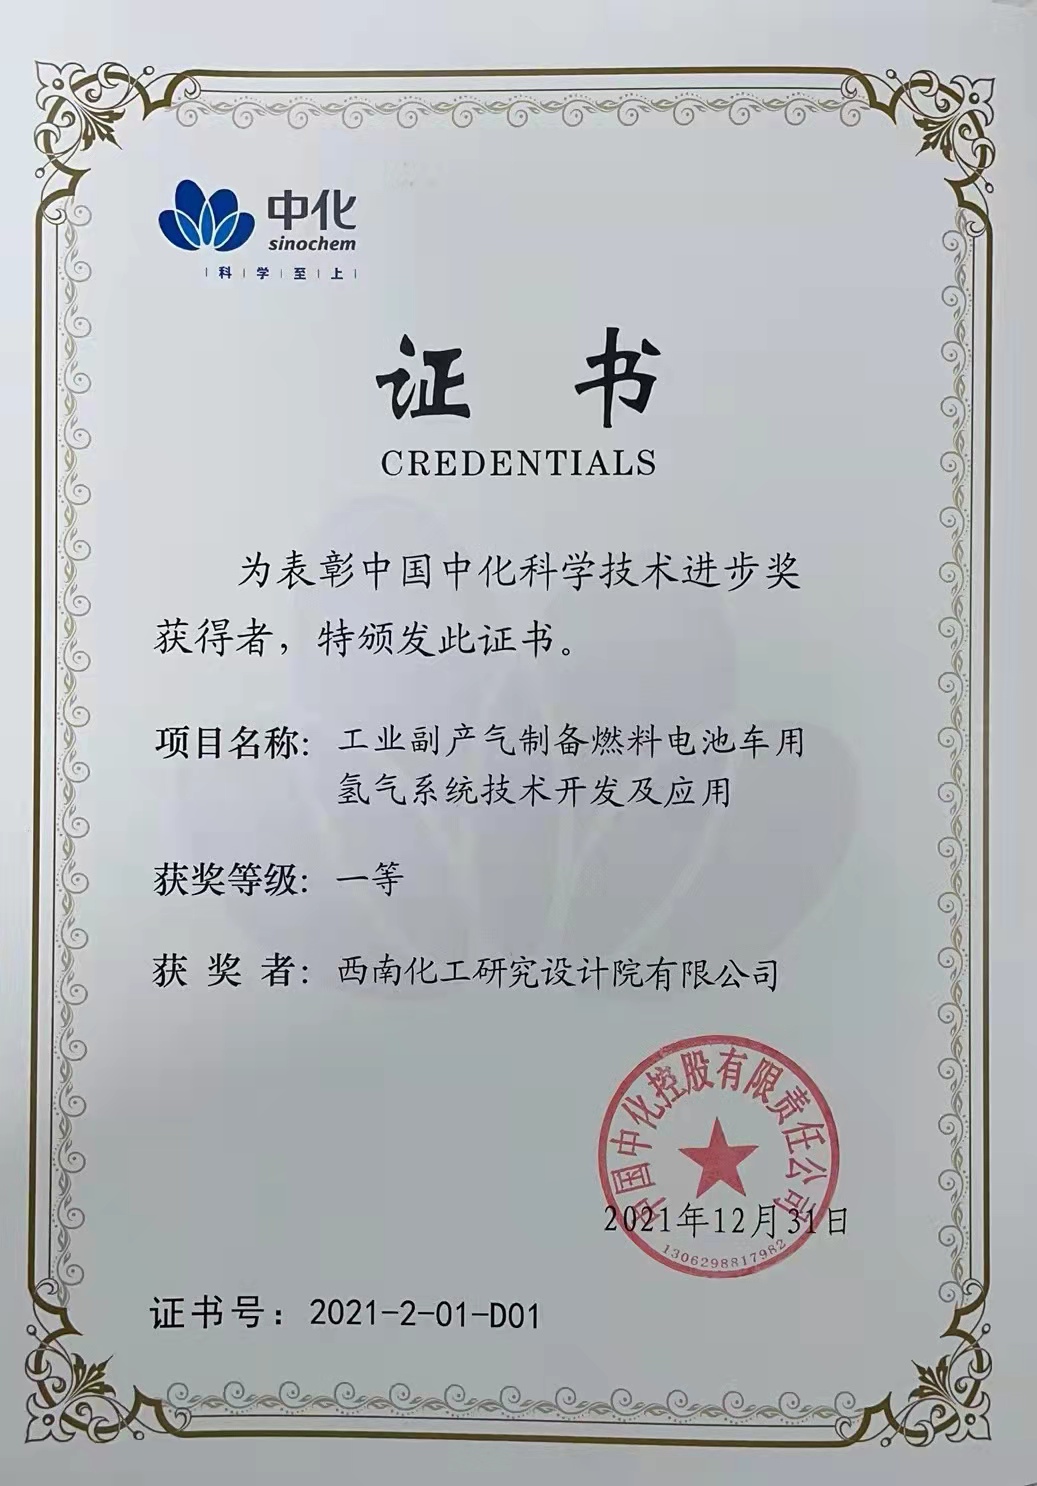 《工业副产气制备燃料电池车用氢气系统技术开发及应用》荣获中国中化科技进步奖一等奖